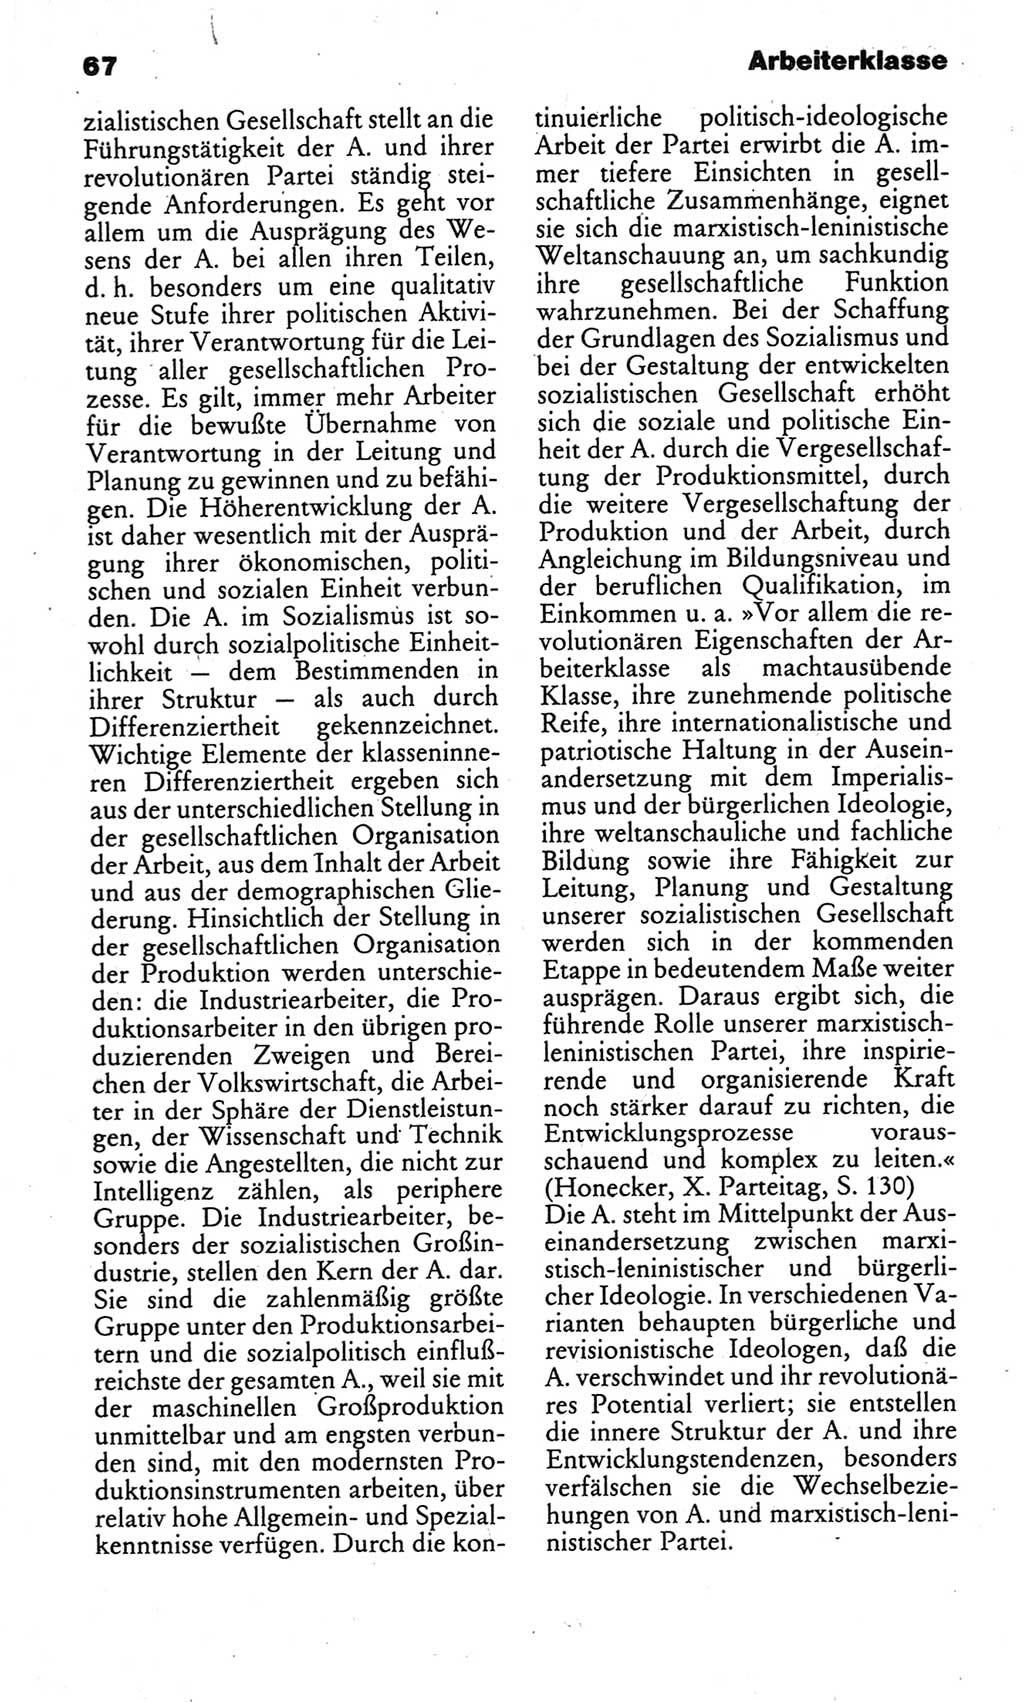 Kleines politisches Wörterbuch [Deutsche Demokratische Republik (DDR)] 1986, Seite 67 (Kl. pol. Wb. DDR 1986, S. 67)